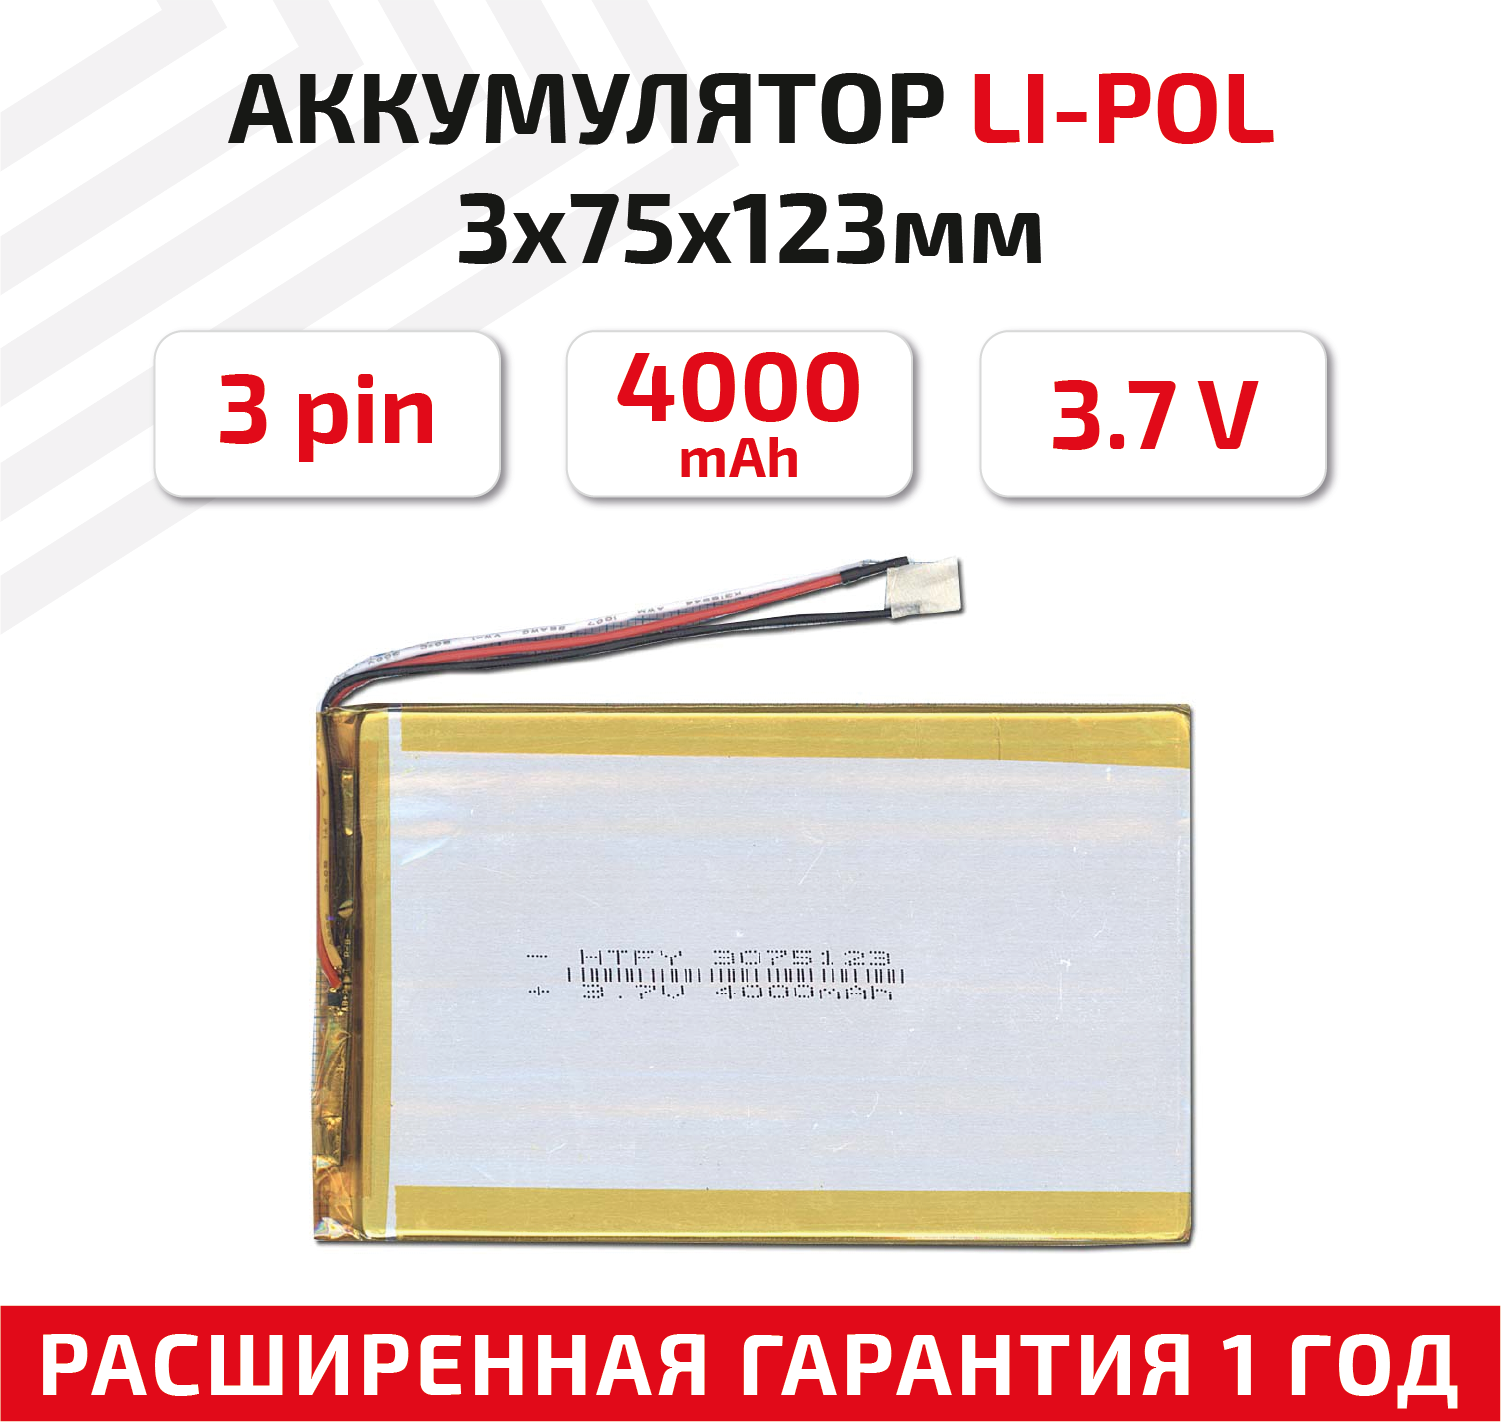 Универсальный аккумулятор (АКБ) для планшета, видеорегистратора и др, 3х75х123мм, 4000мАч, 3.7В, Li-Pol, 3-pin (на 3 провода)